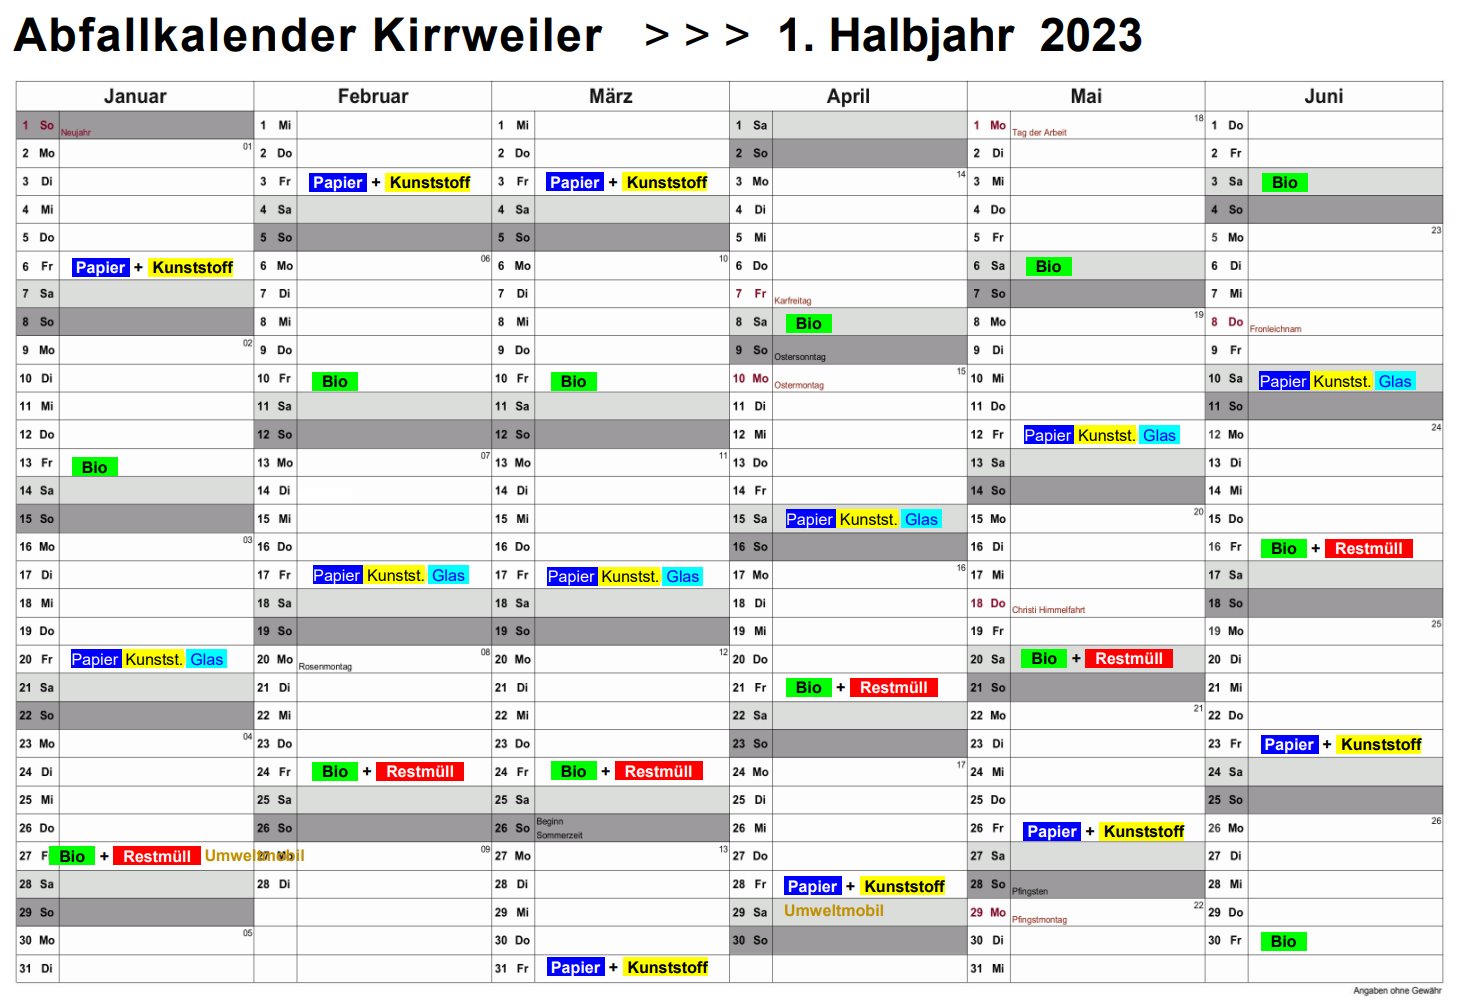 Ablage/Abfallkalender_Kirrweiler_1-Halbjahr_2023.pdf